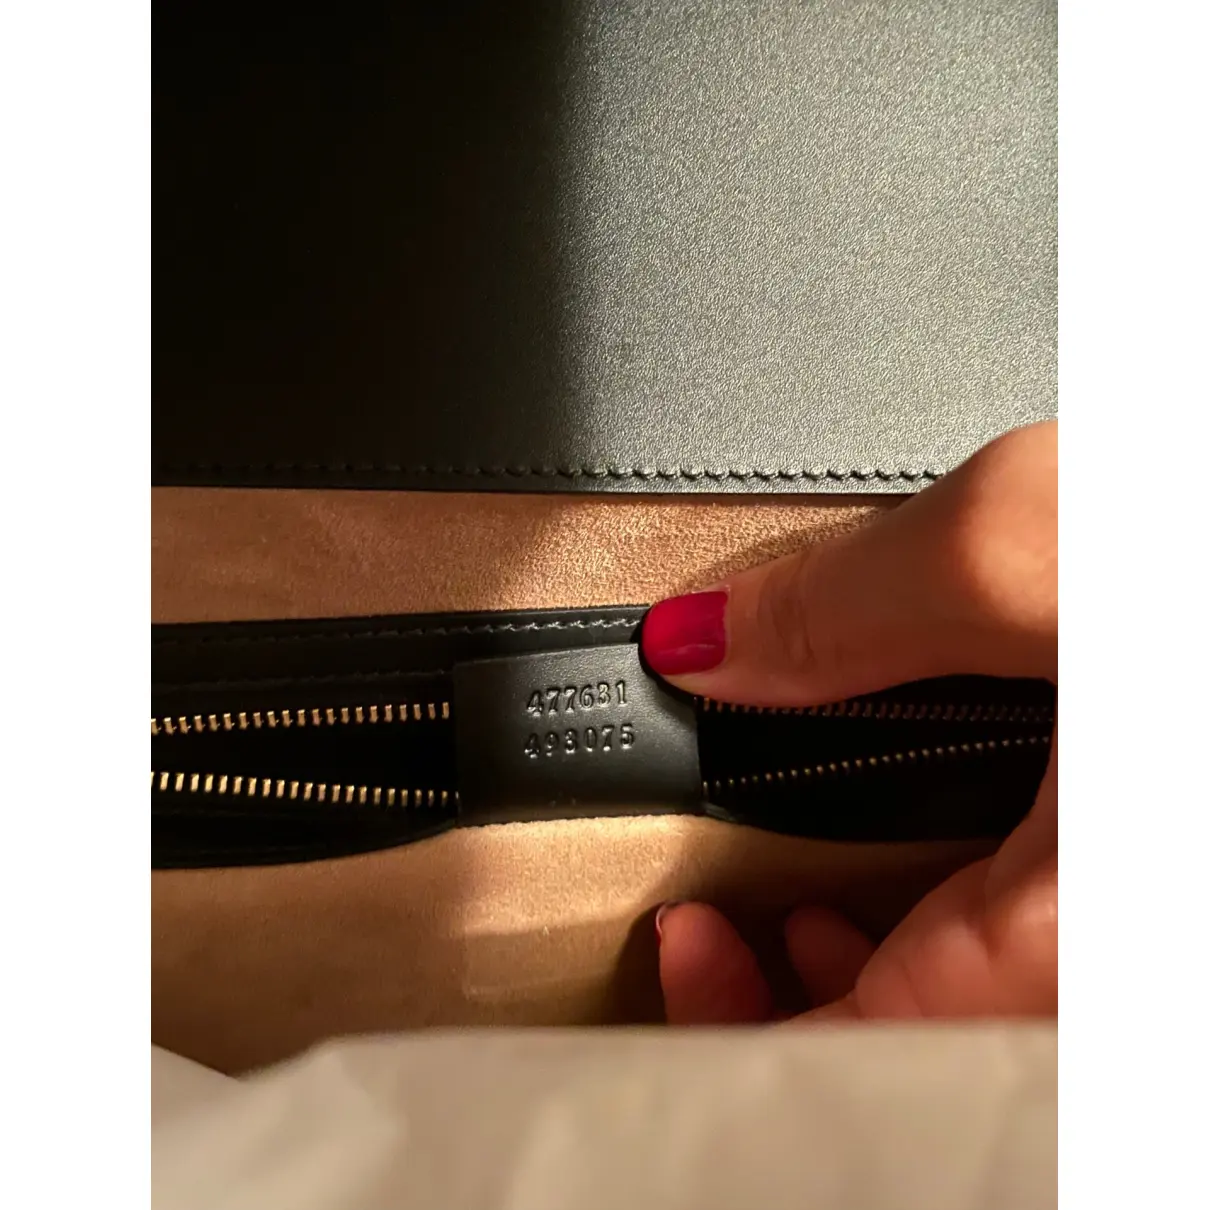 Sylvie Top Handle leather handbag Gucci